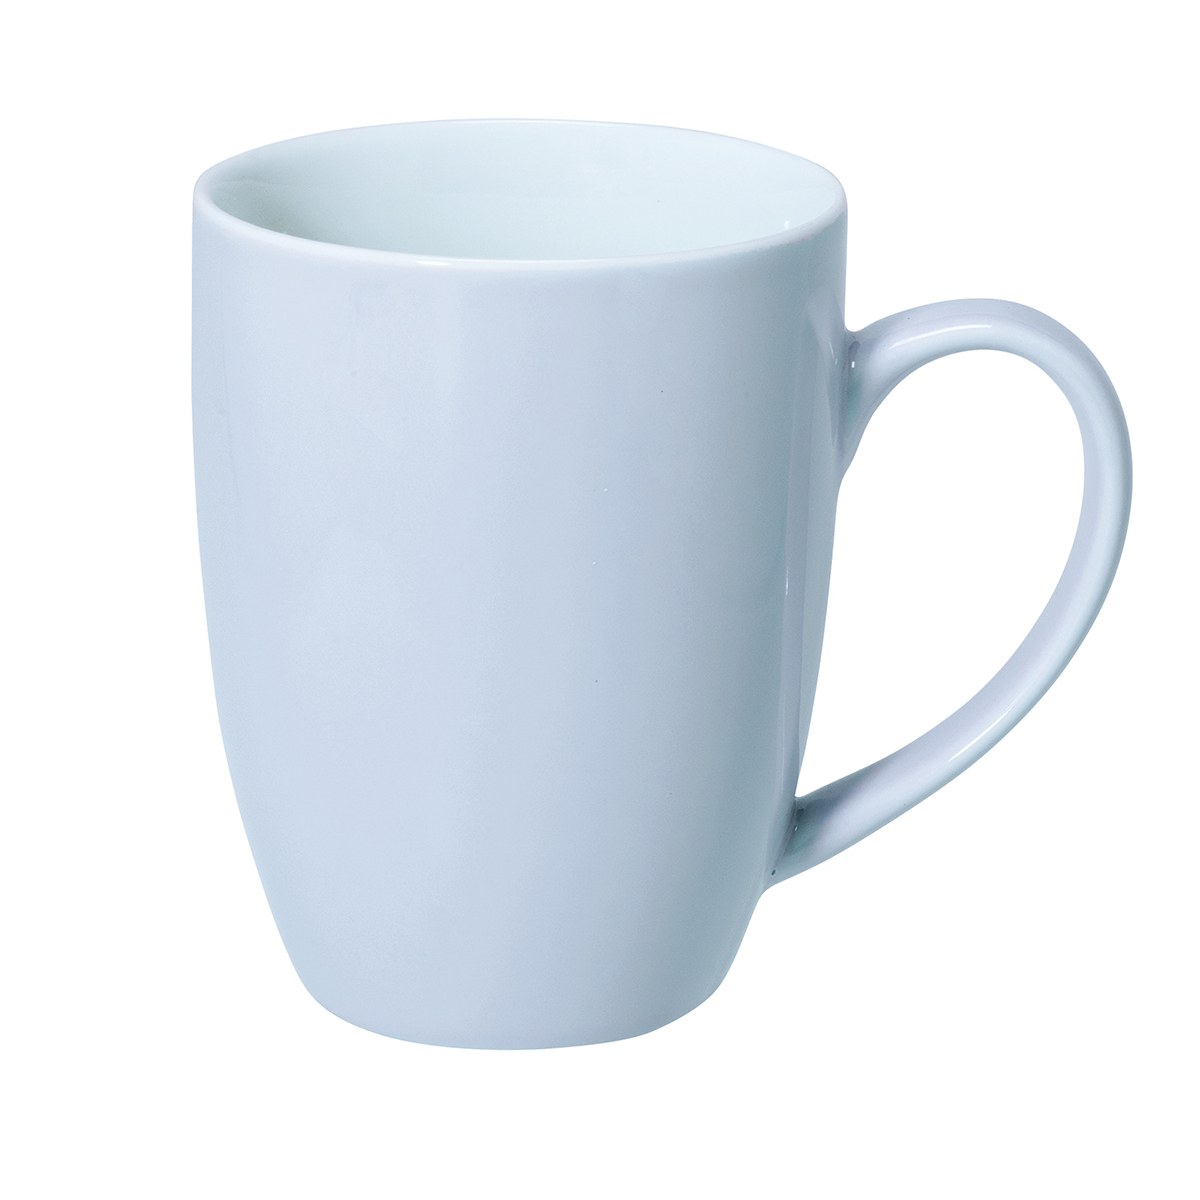 Mignon, mug 0.3l, light blue